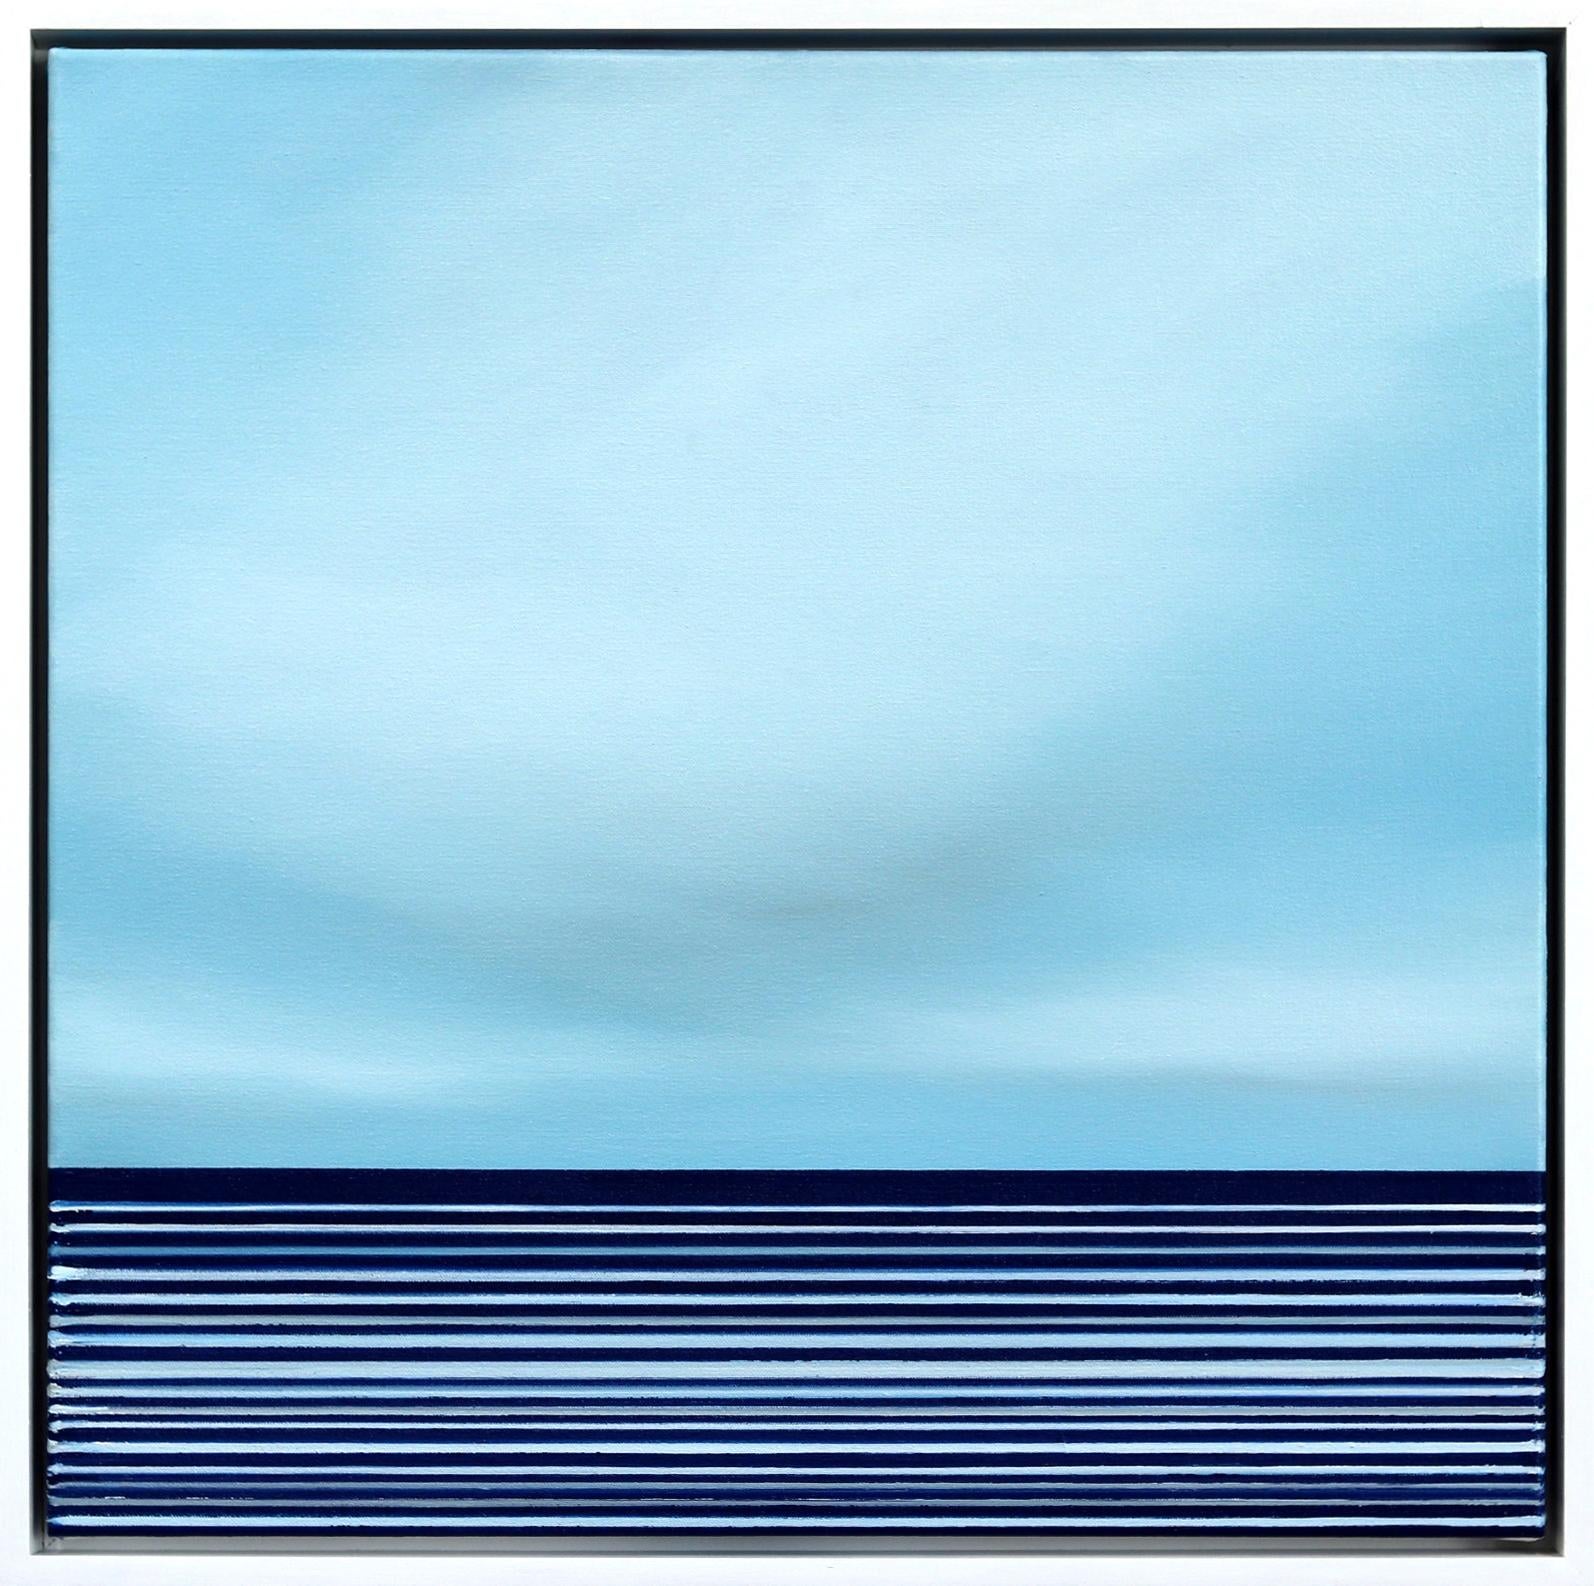 Abstract Painting Jeremy  Prim - "Untitled No. 768" - Œuvre d'art contemporaine minimaliste bleue encadrée